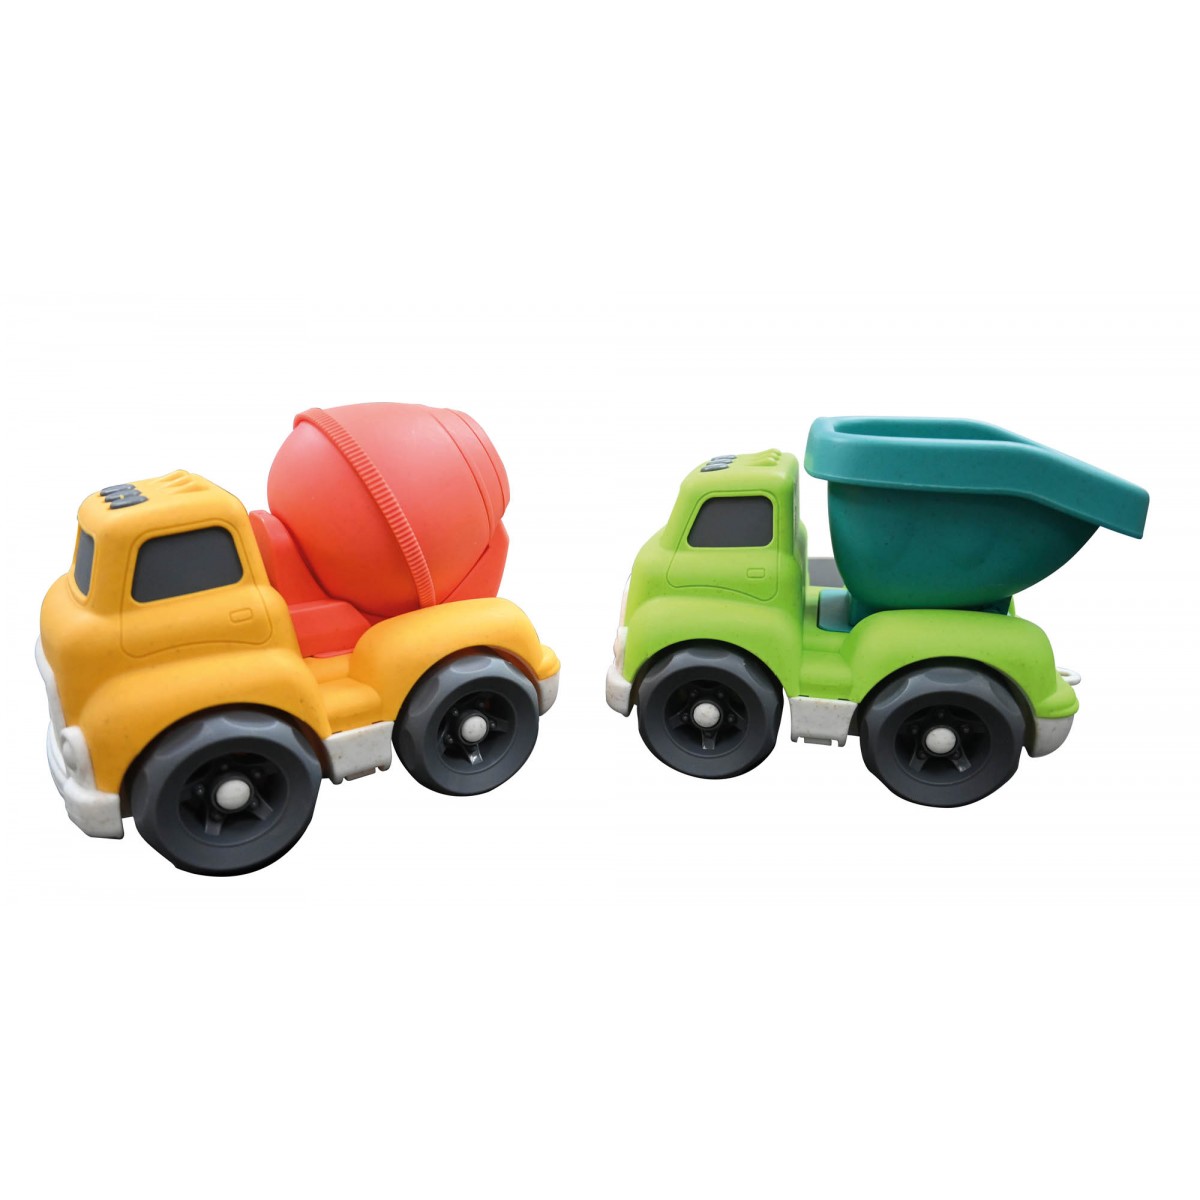 Spielzeugautos zum Teil aus Weizenfasern hergestellt 